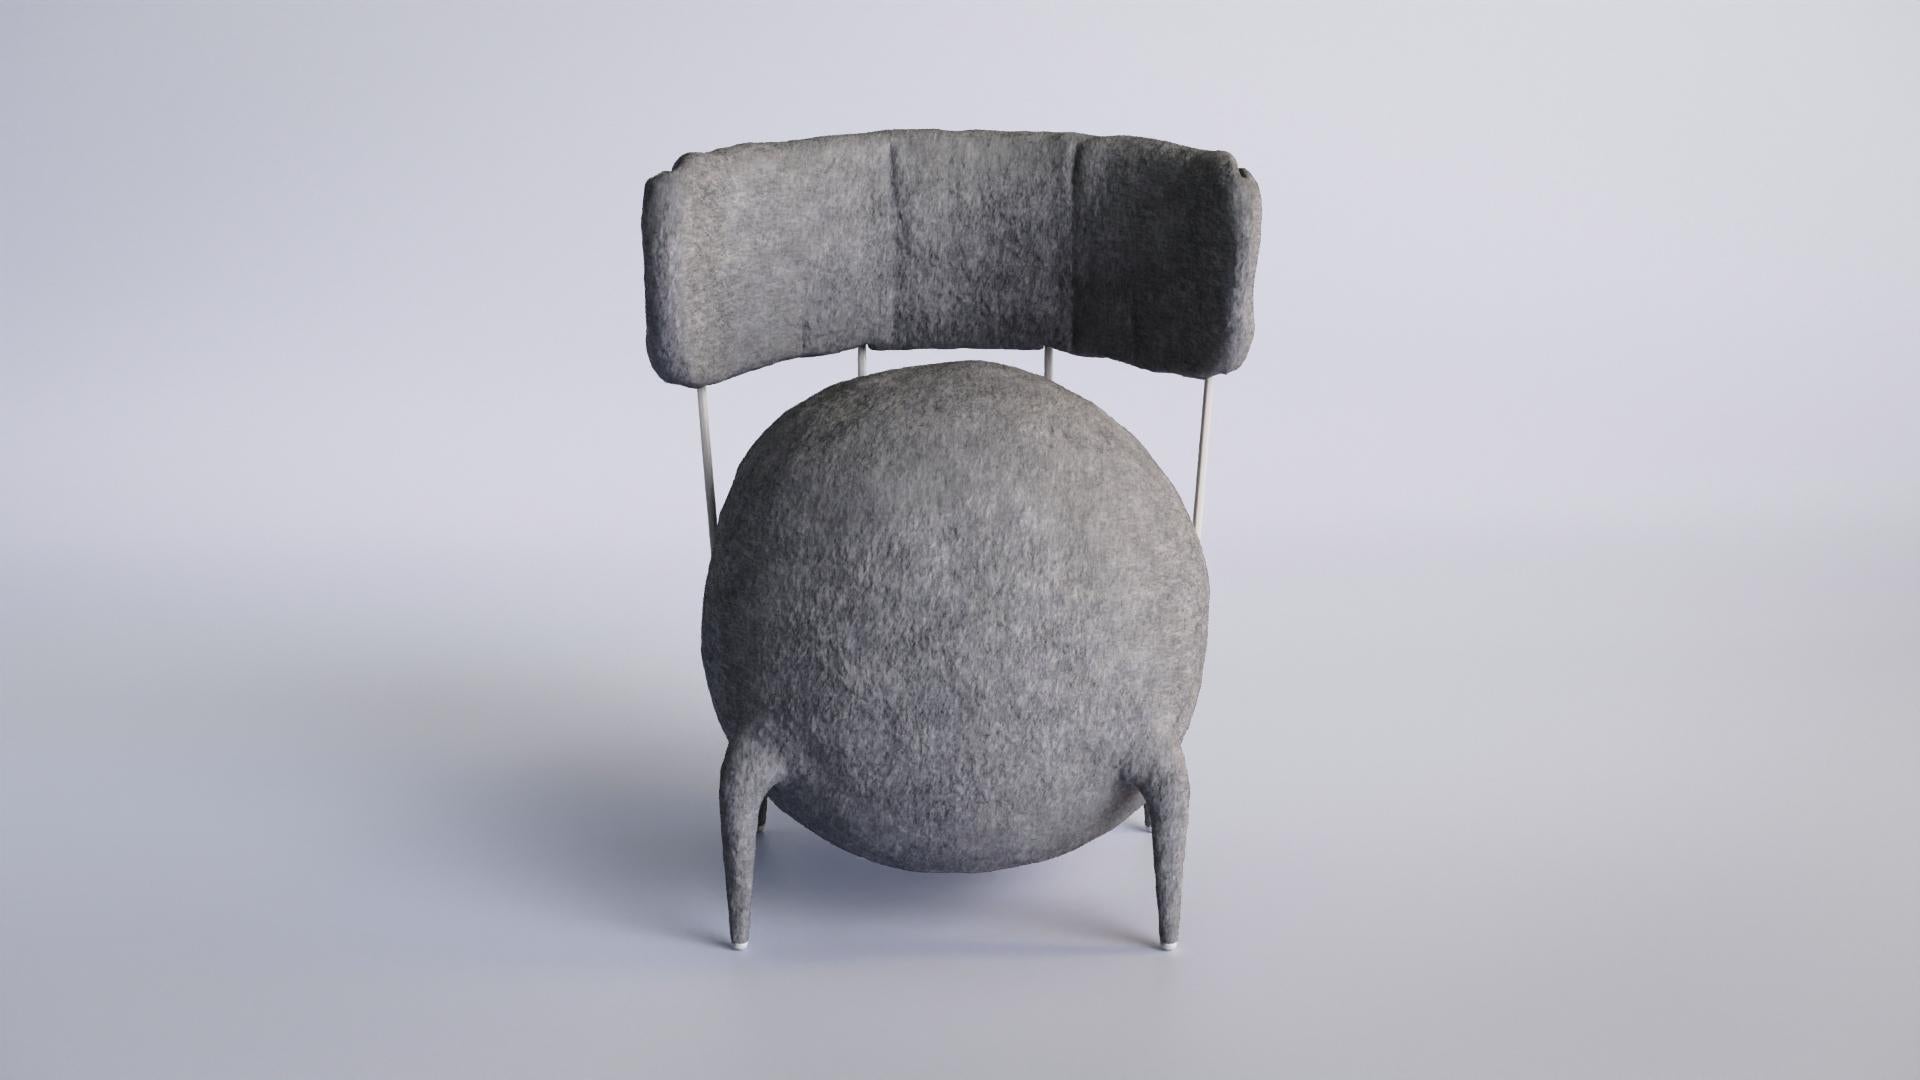 Chaise Lymphochair de Taras Yoom
Édition limitée à 50 exemplaires
Dimensions : D 62 x L 62 x H 80 cm
MATERIAL : Bois, métal, feutre, PU.

La chaise est composée d'une housse en feutre rosé blanc foncé, de tiges métalliques argentées ou blanches et